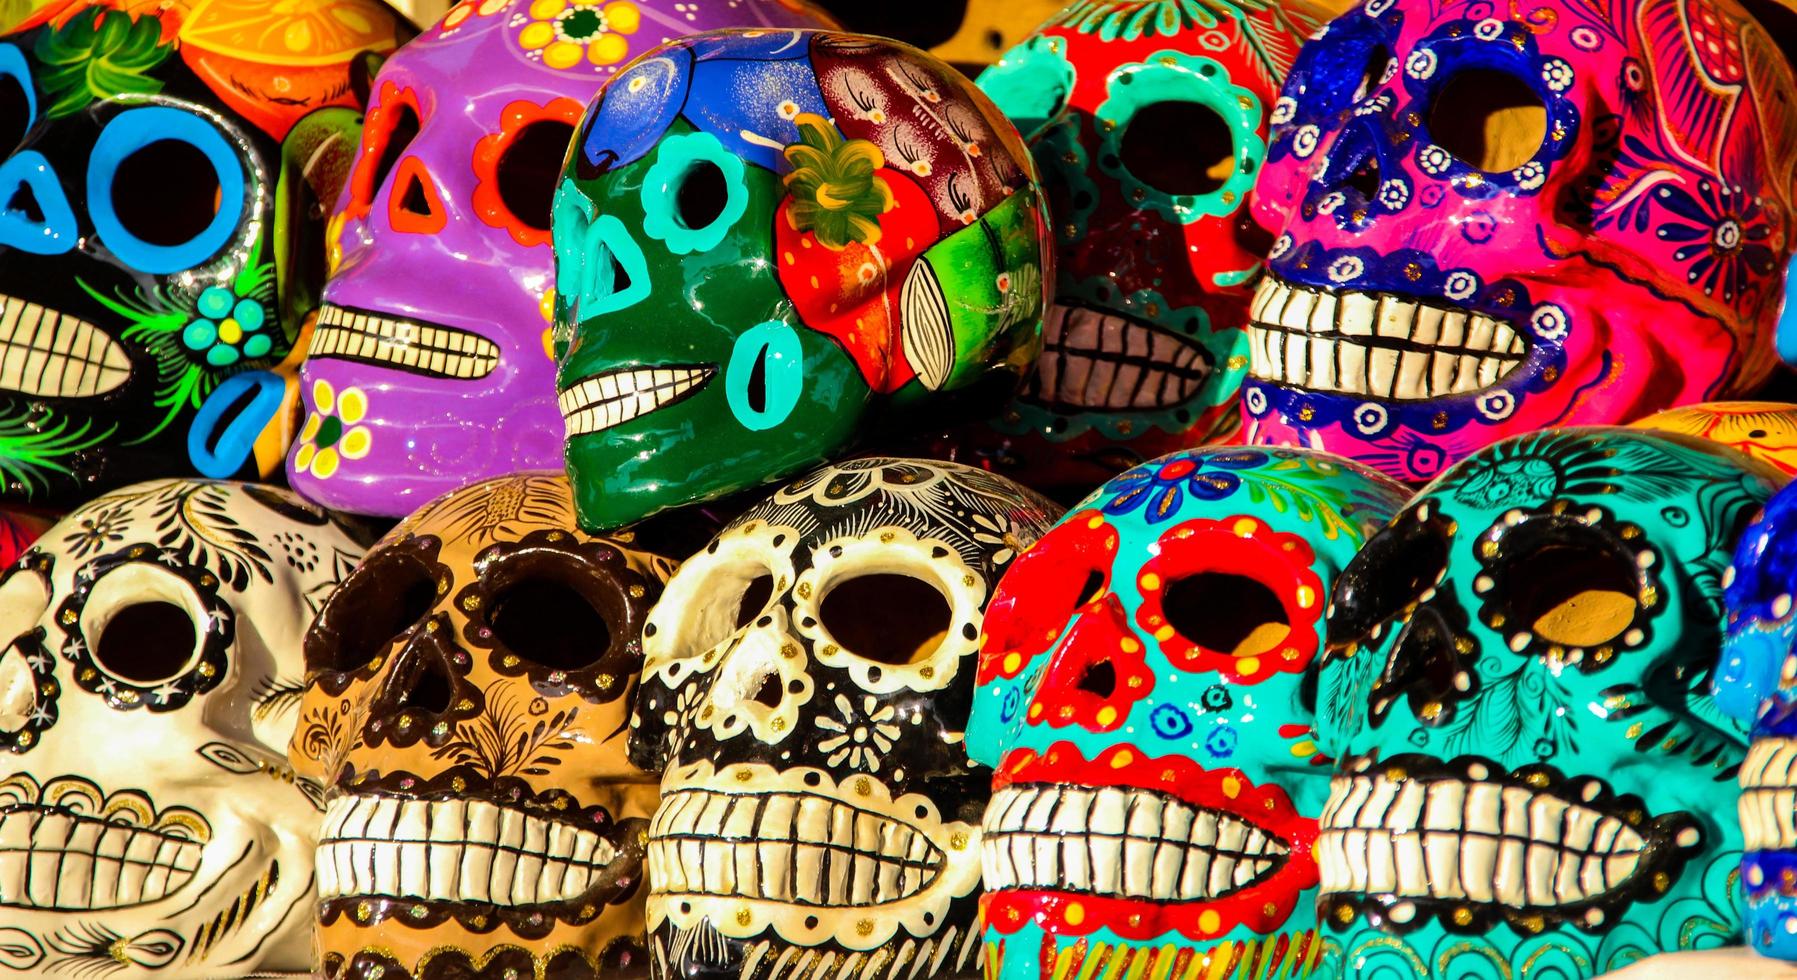 cabo san lucas, mexico, 8 augusti 2014 - calacas, träskallen dag av de döda maskerna på marknaden i cabo san lucas, mexico. masker är typiska symboler som representerar calacas - skelett. foto